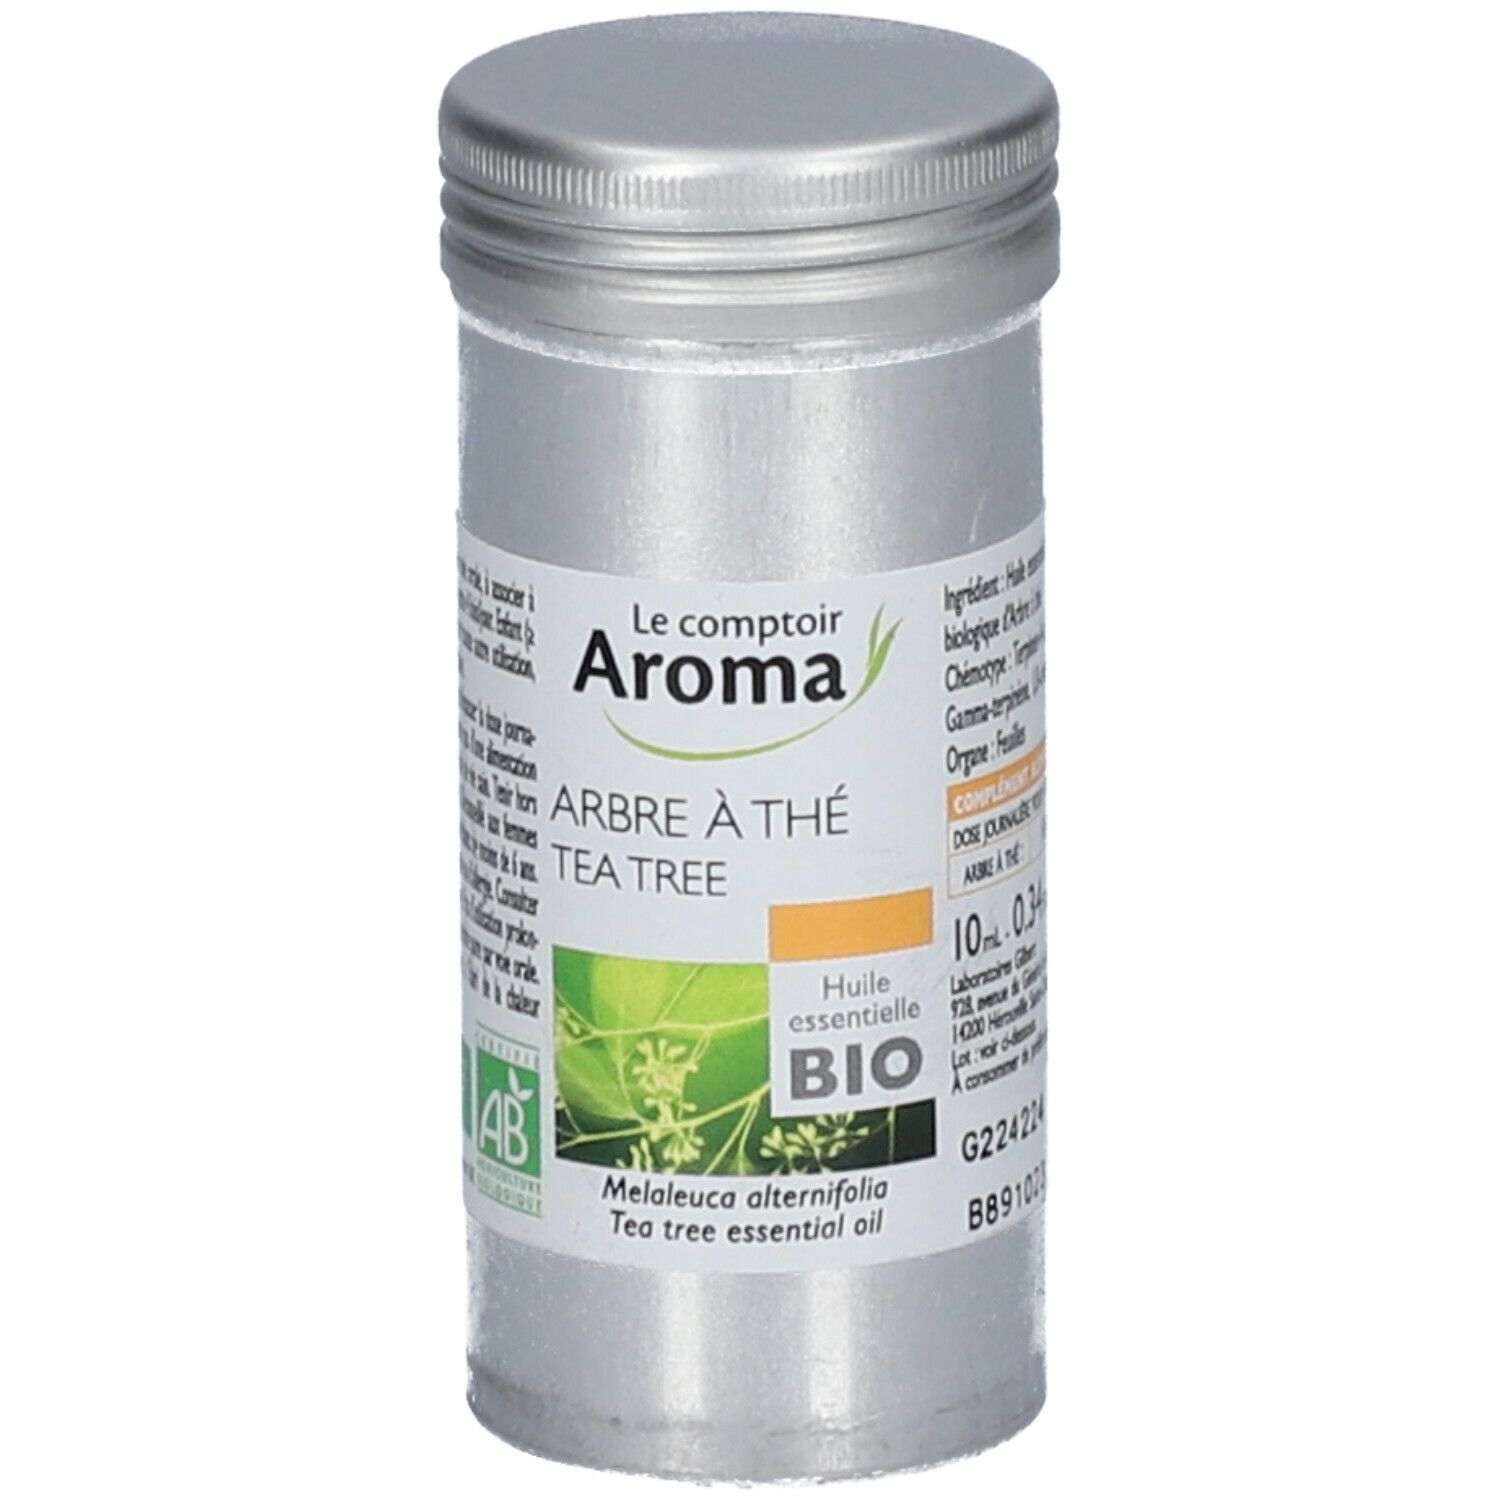 Le Comptoir Aroma Huile essentielle Arbre à thé / Tea Tree Bio